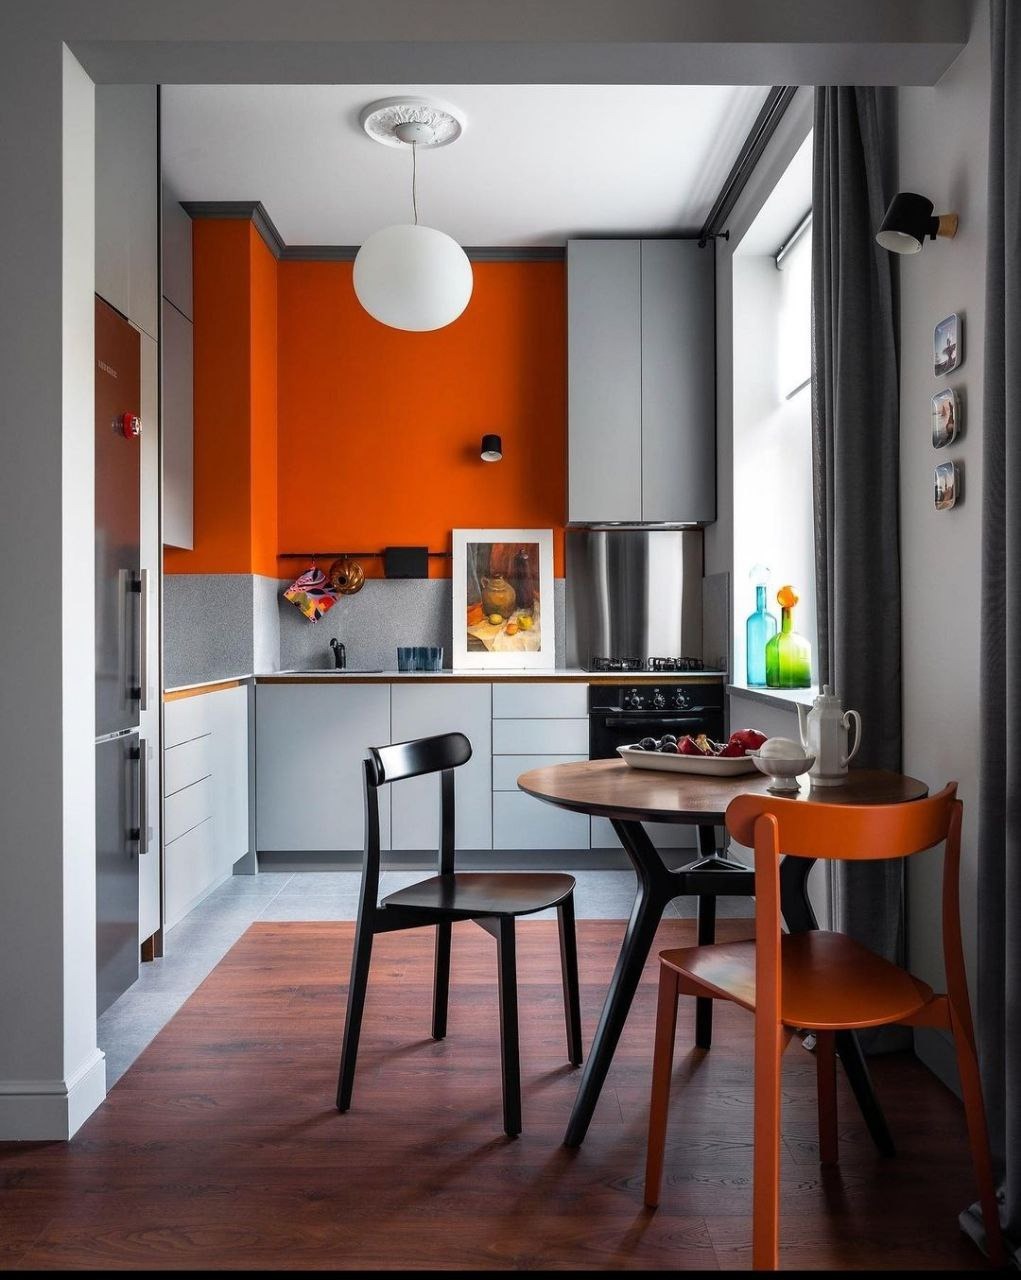 Дизайн кухни 12 кв.м. - планировка и цветовая гамма